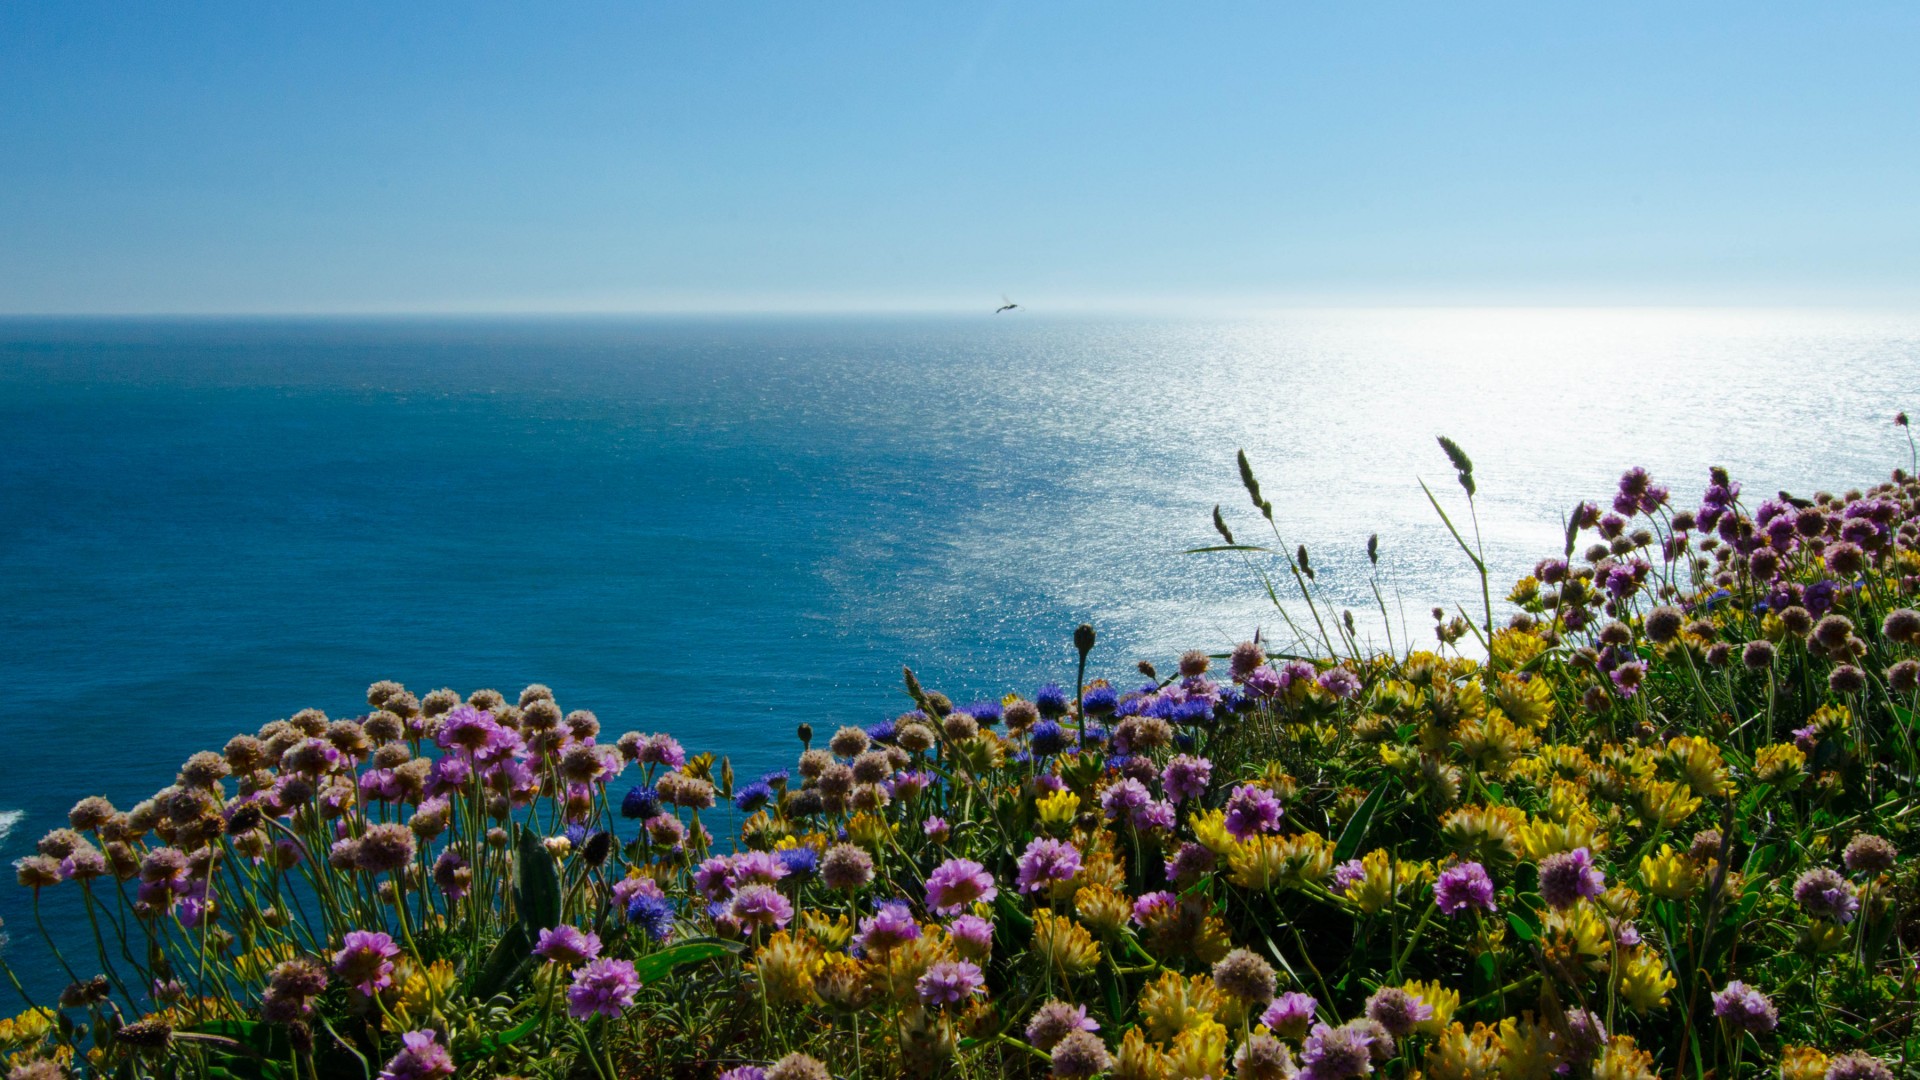 英格兰,爱尔兰海,海雀岛,鲜花,大海风景桌面壁纸